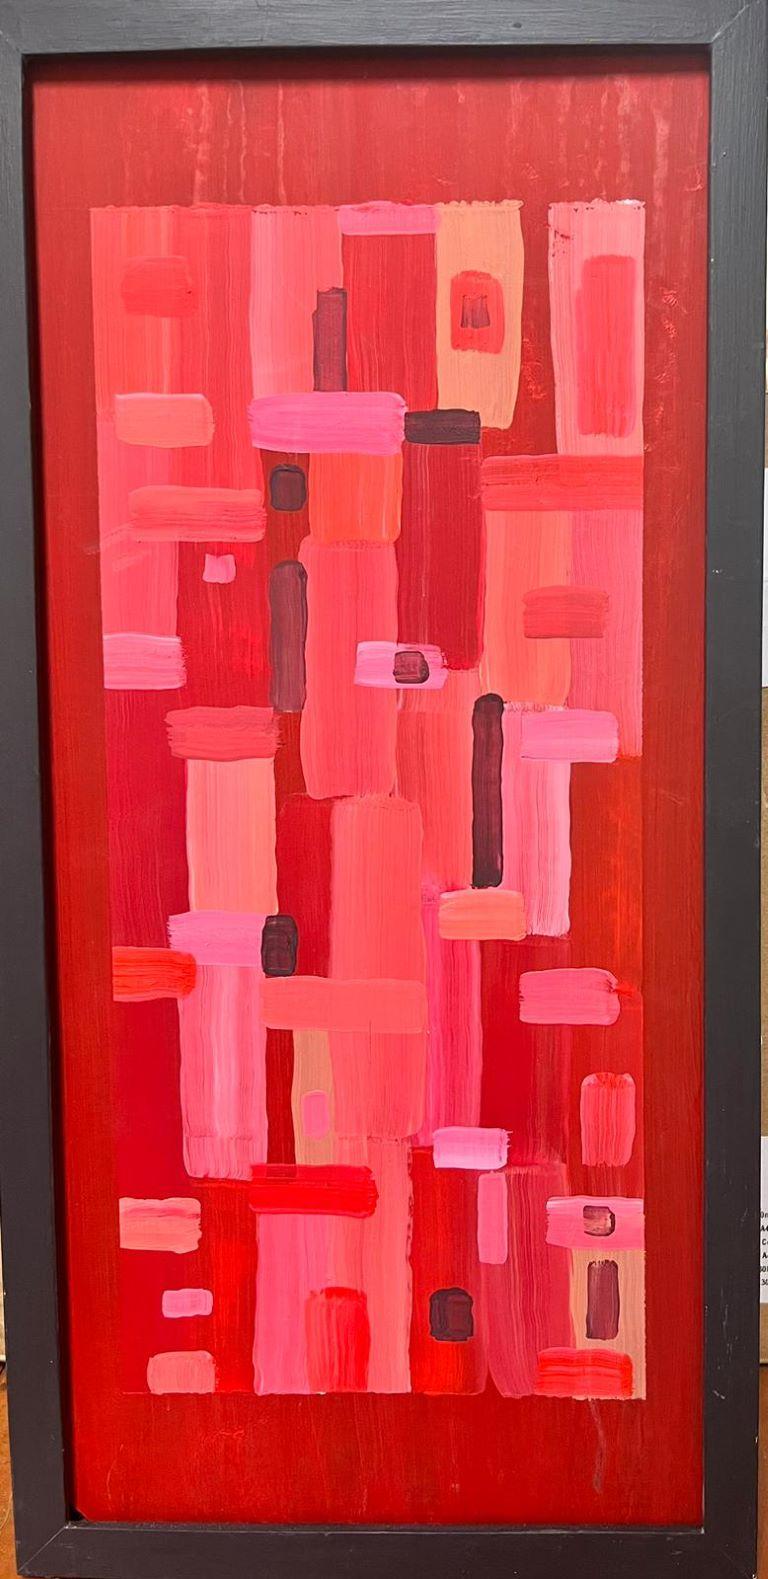 Peinture britannique cubiste géométrique abstraite de formes abstraites roses et rouges - Painting de Contemporary British